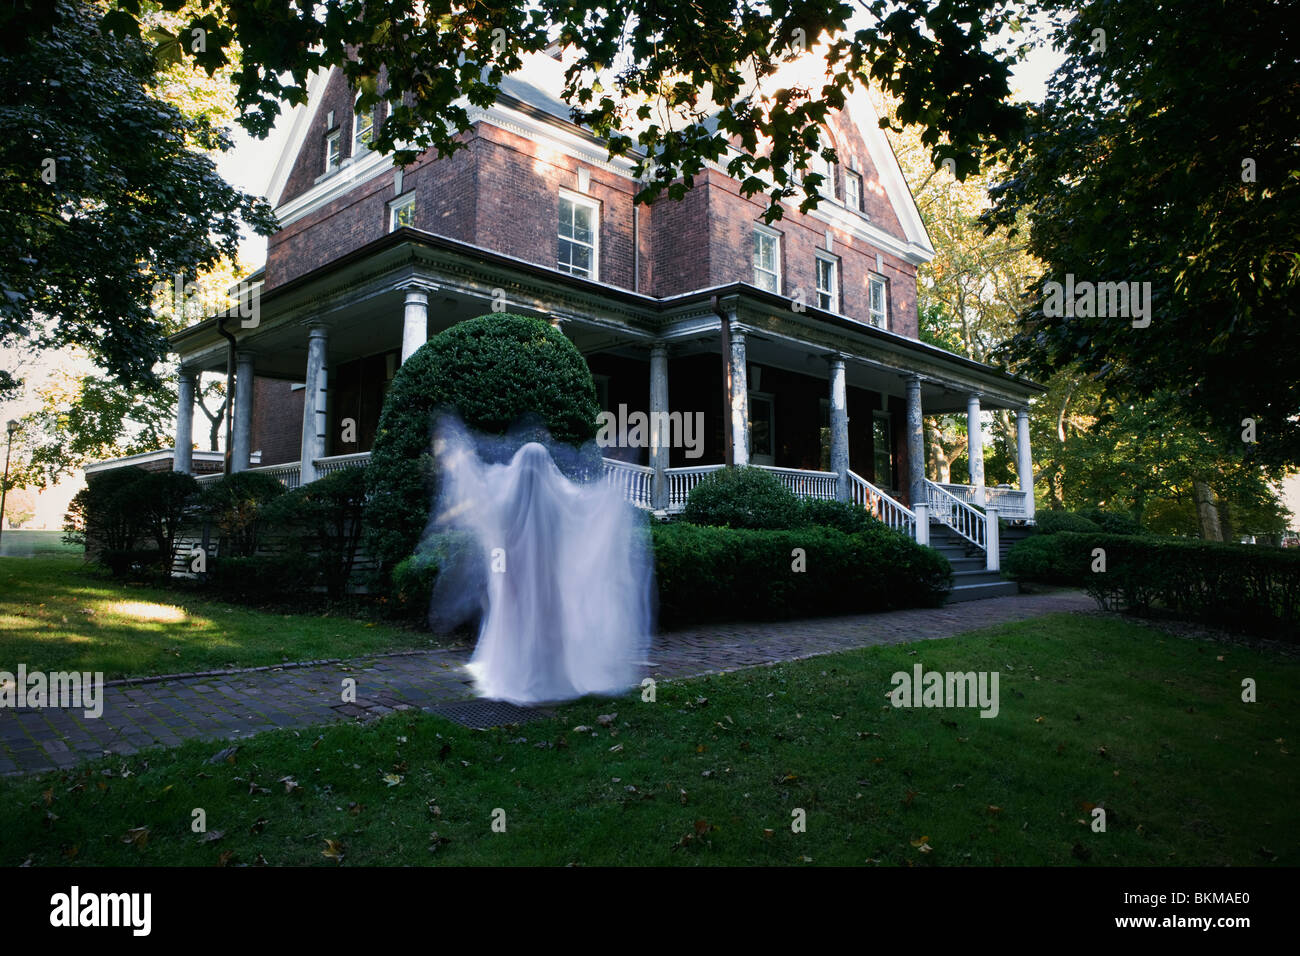 La figure fantomatique en face de la maison la fin de l'après-midi fiche effrayante de Halloween Banque D'Images